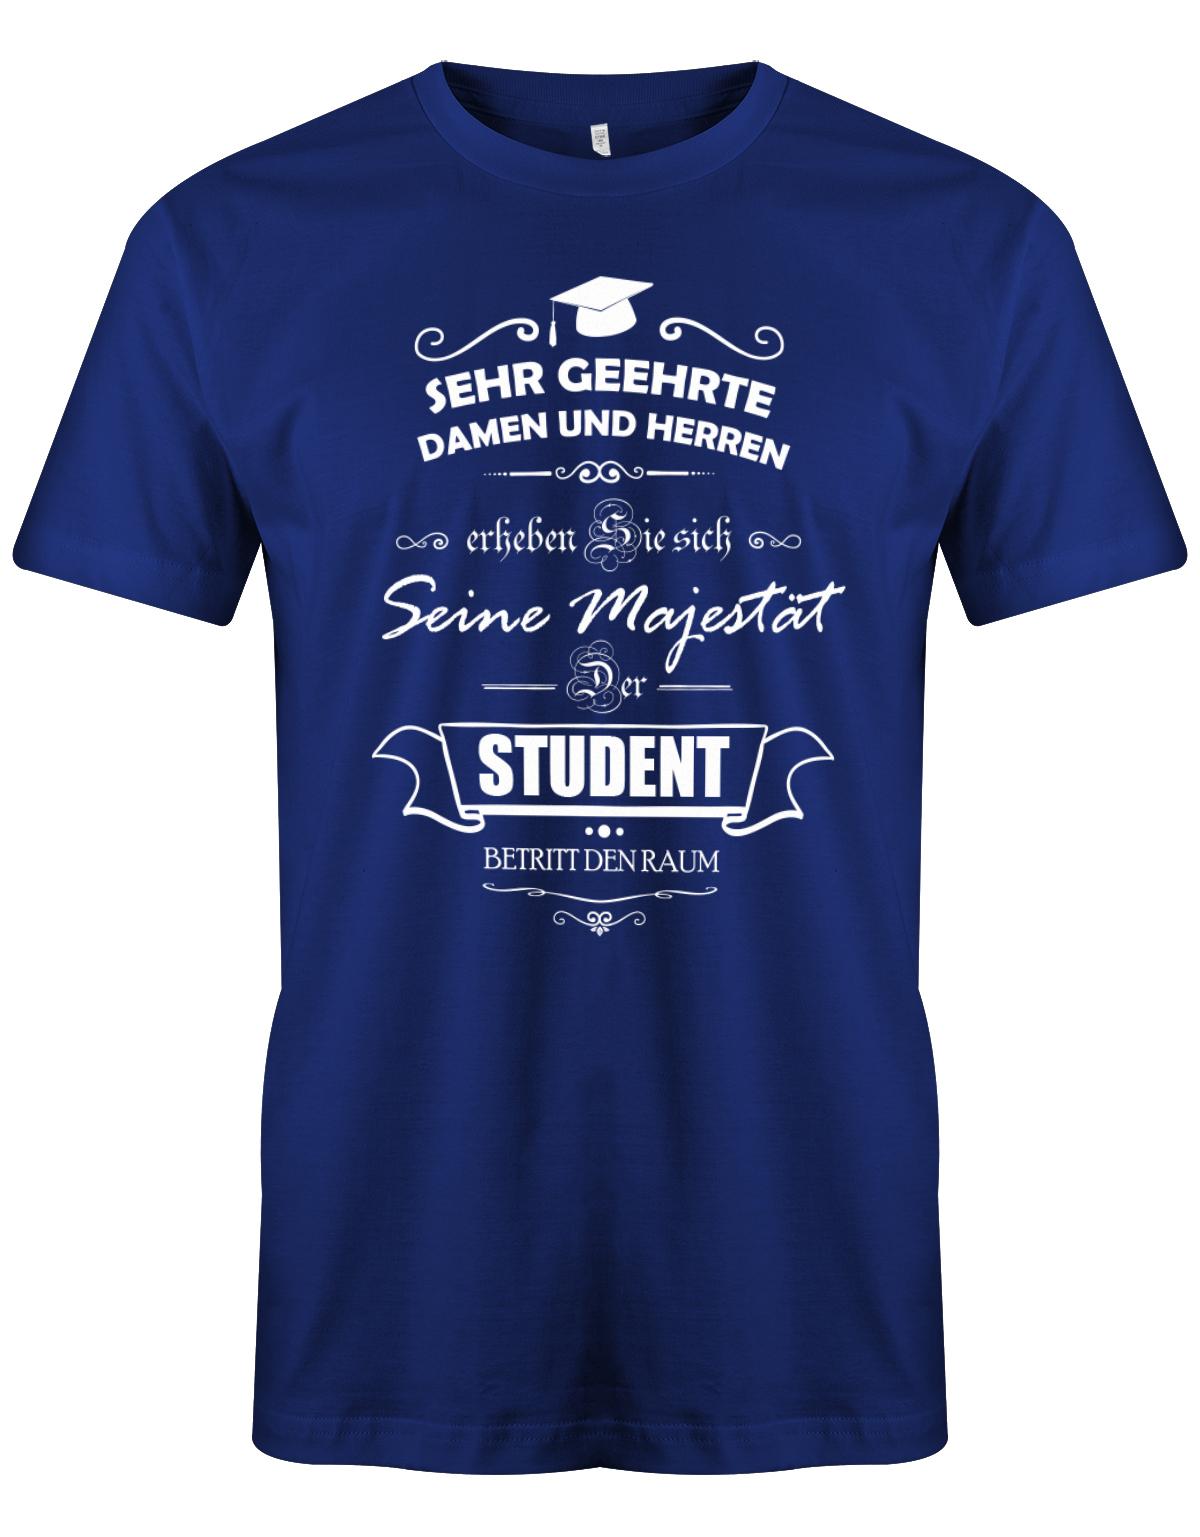 Seine-Majest-t-der-Student-betritt-den-Raum-Herren-Studium-Student-Shirt-Royalblau